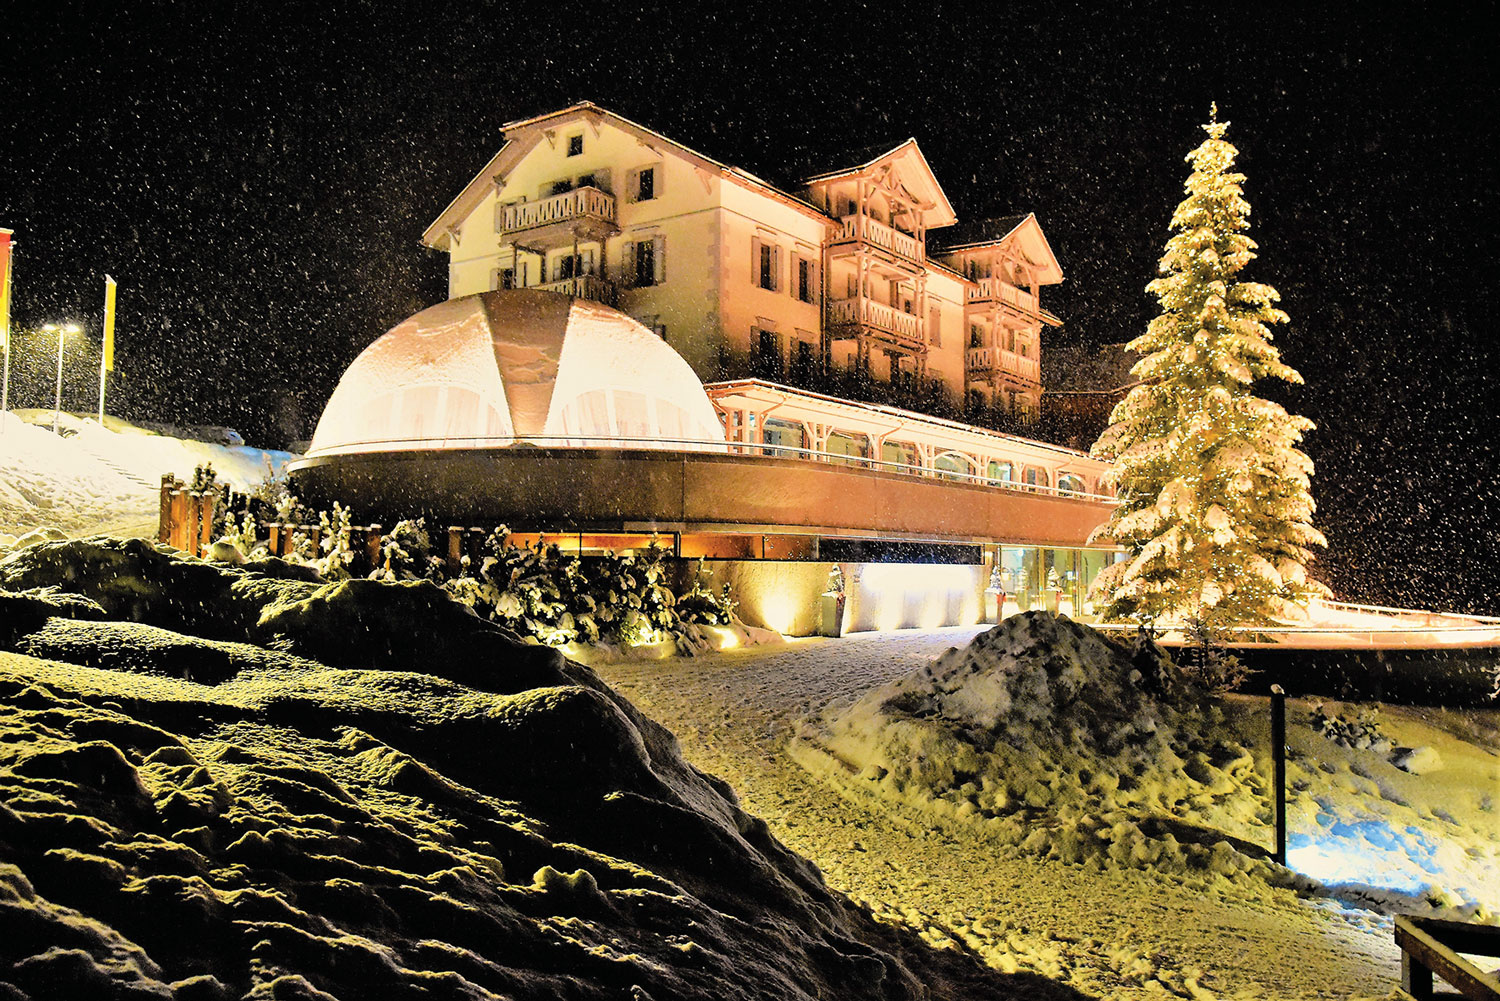 瑞士爱宾娜滑雪水疗度假酒店:恰岑的美丽瑰宝